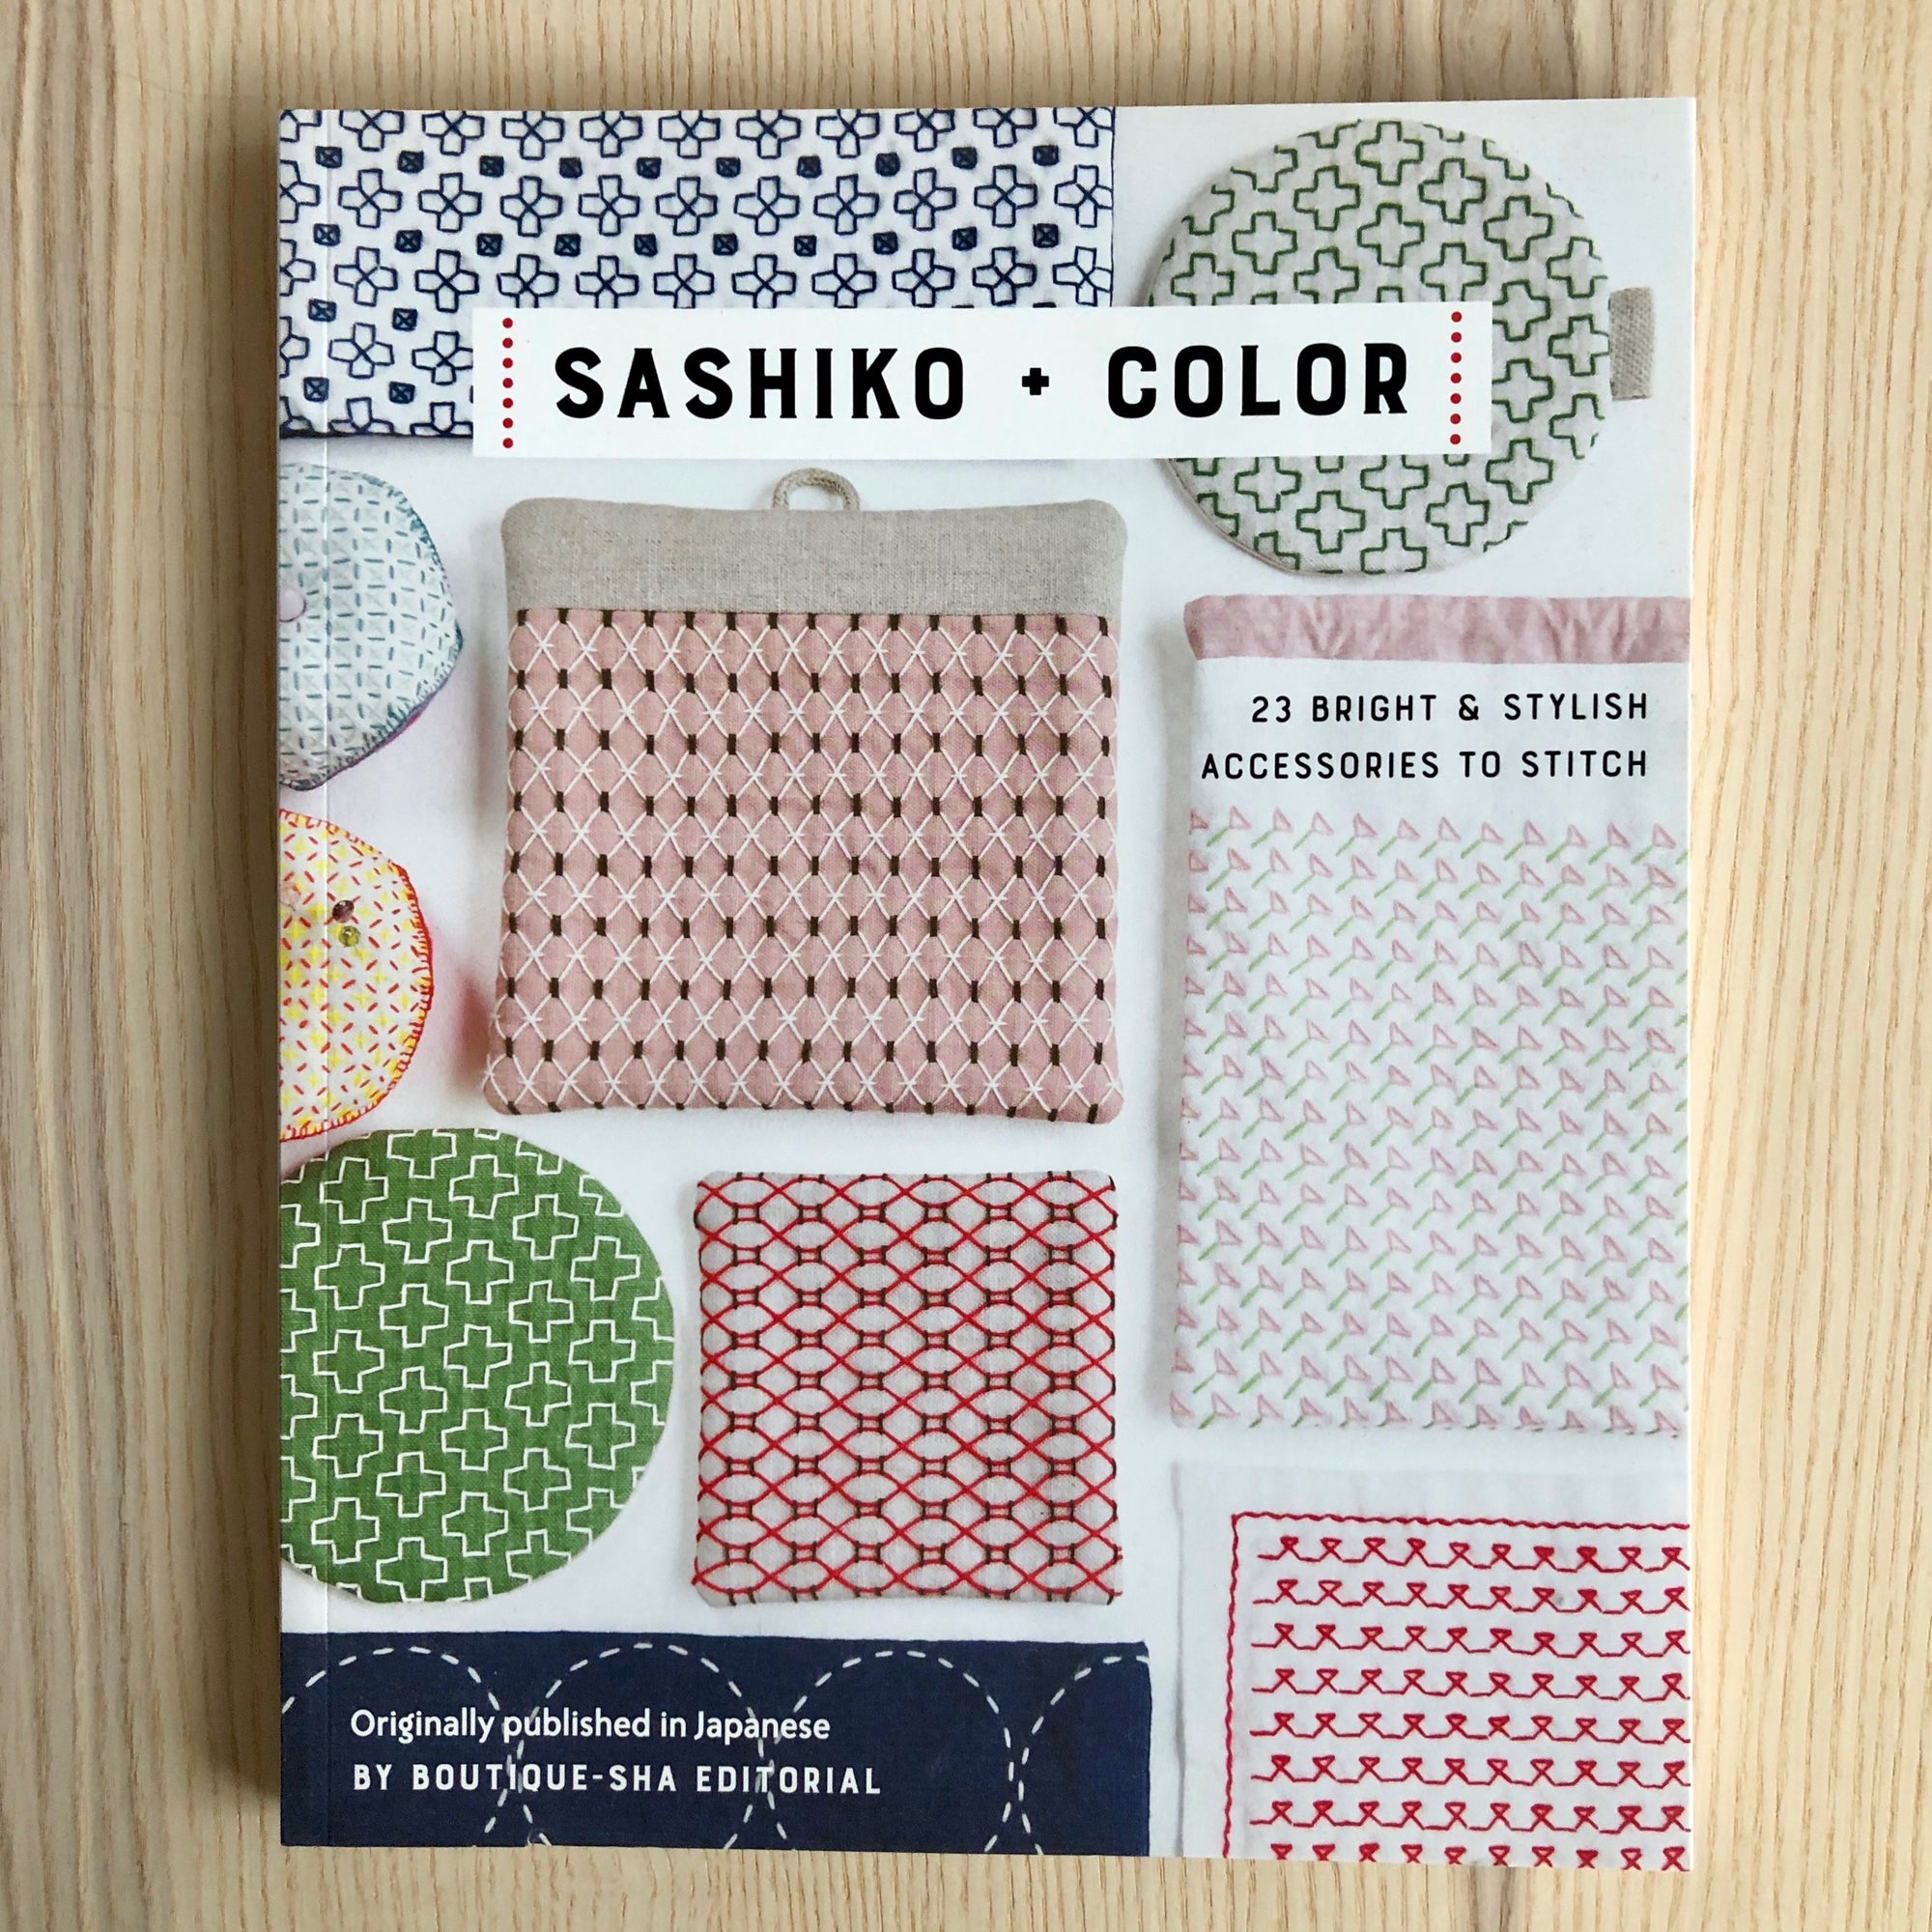 Sashiko + Colour